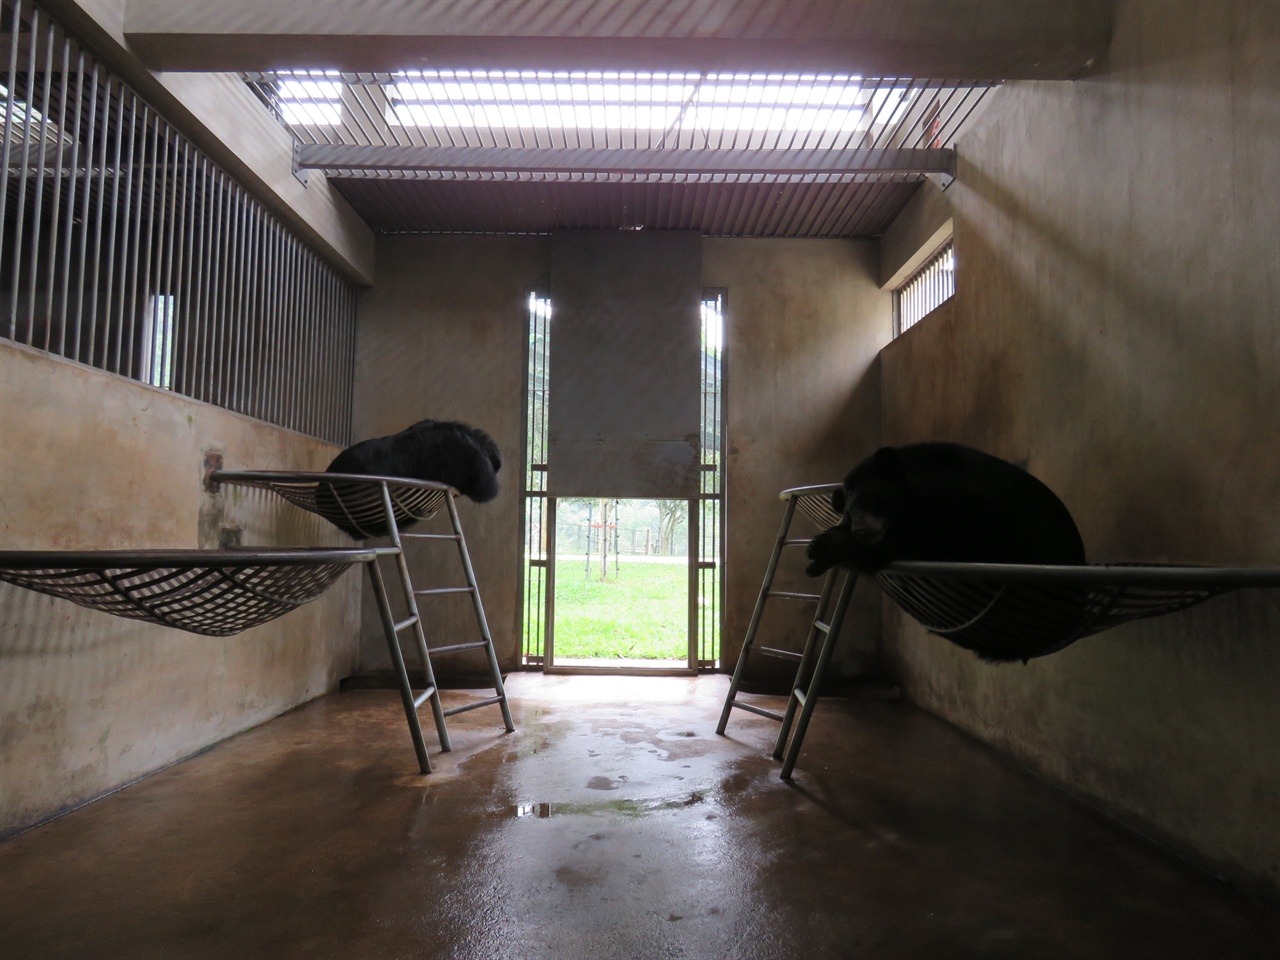  방에서 휴식을 취하는 곰들. 방사장과 방을 자유로이 오갈 수 있다. 